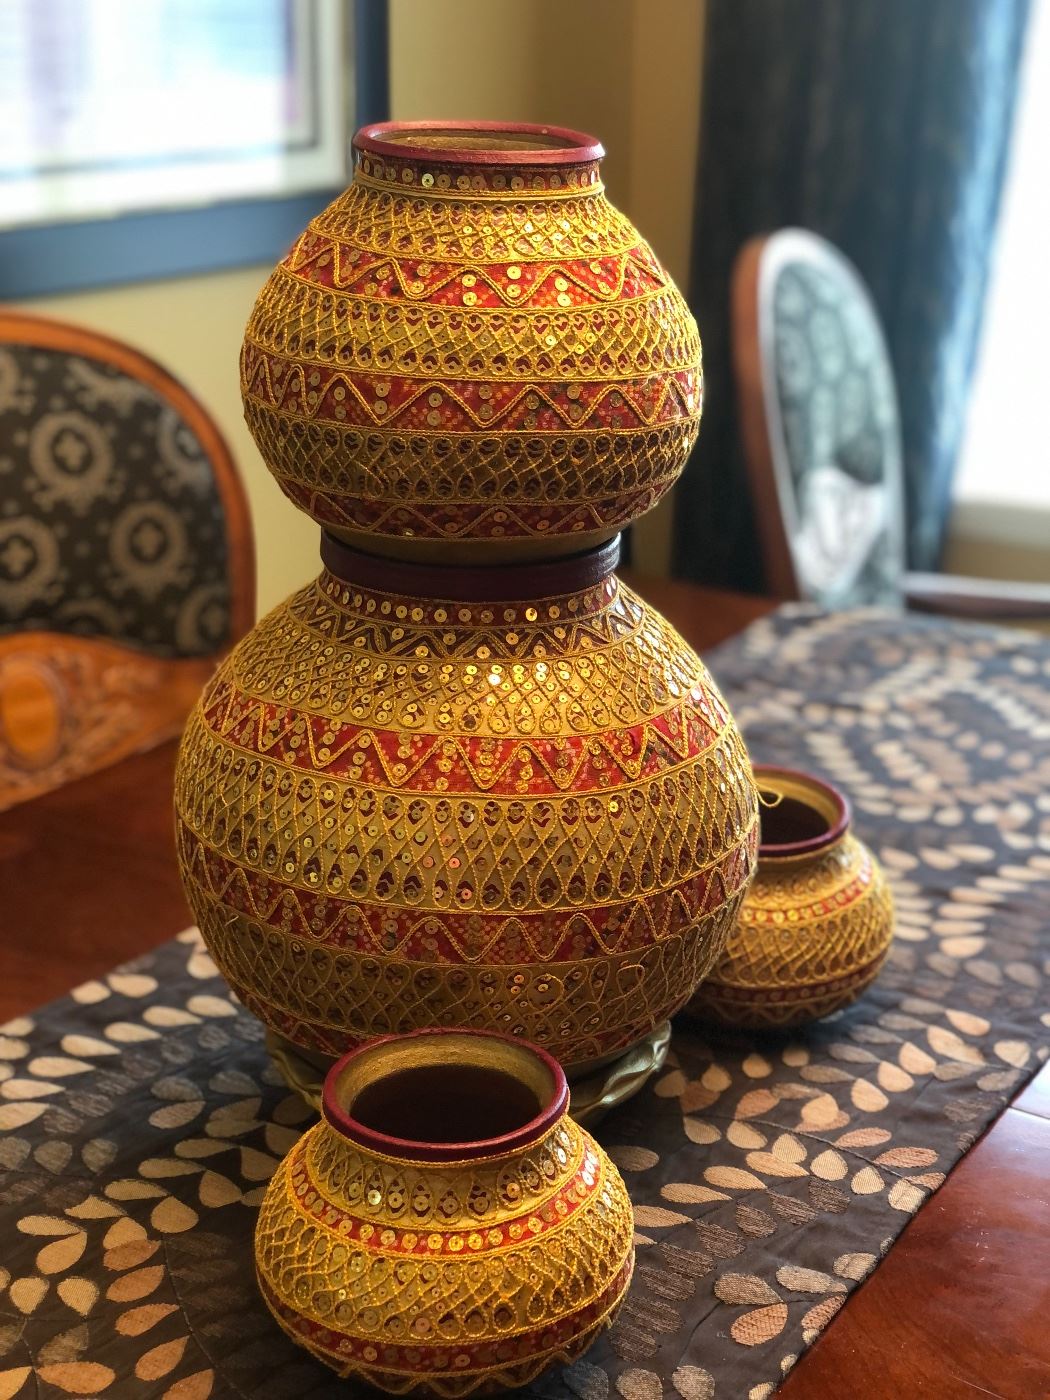 Beautiful decorative vases